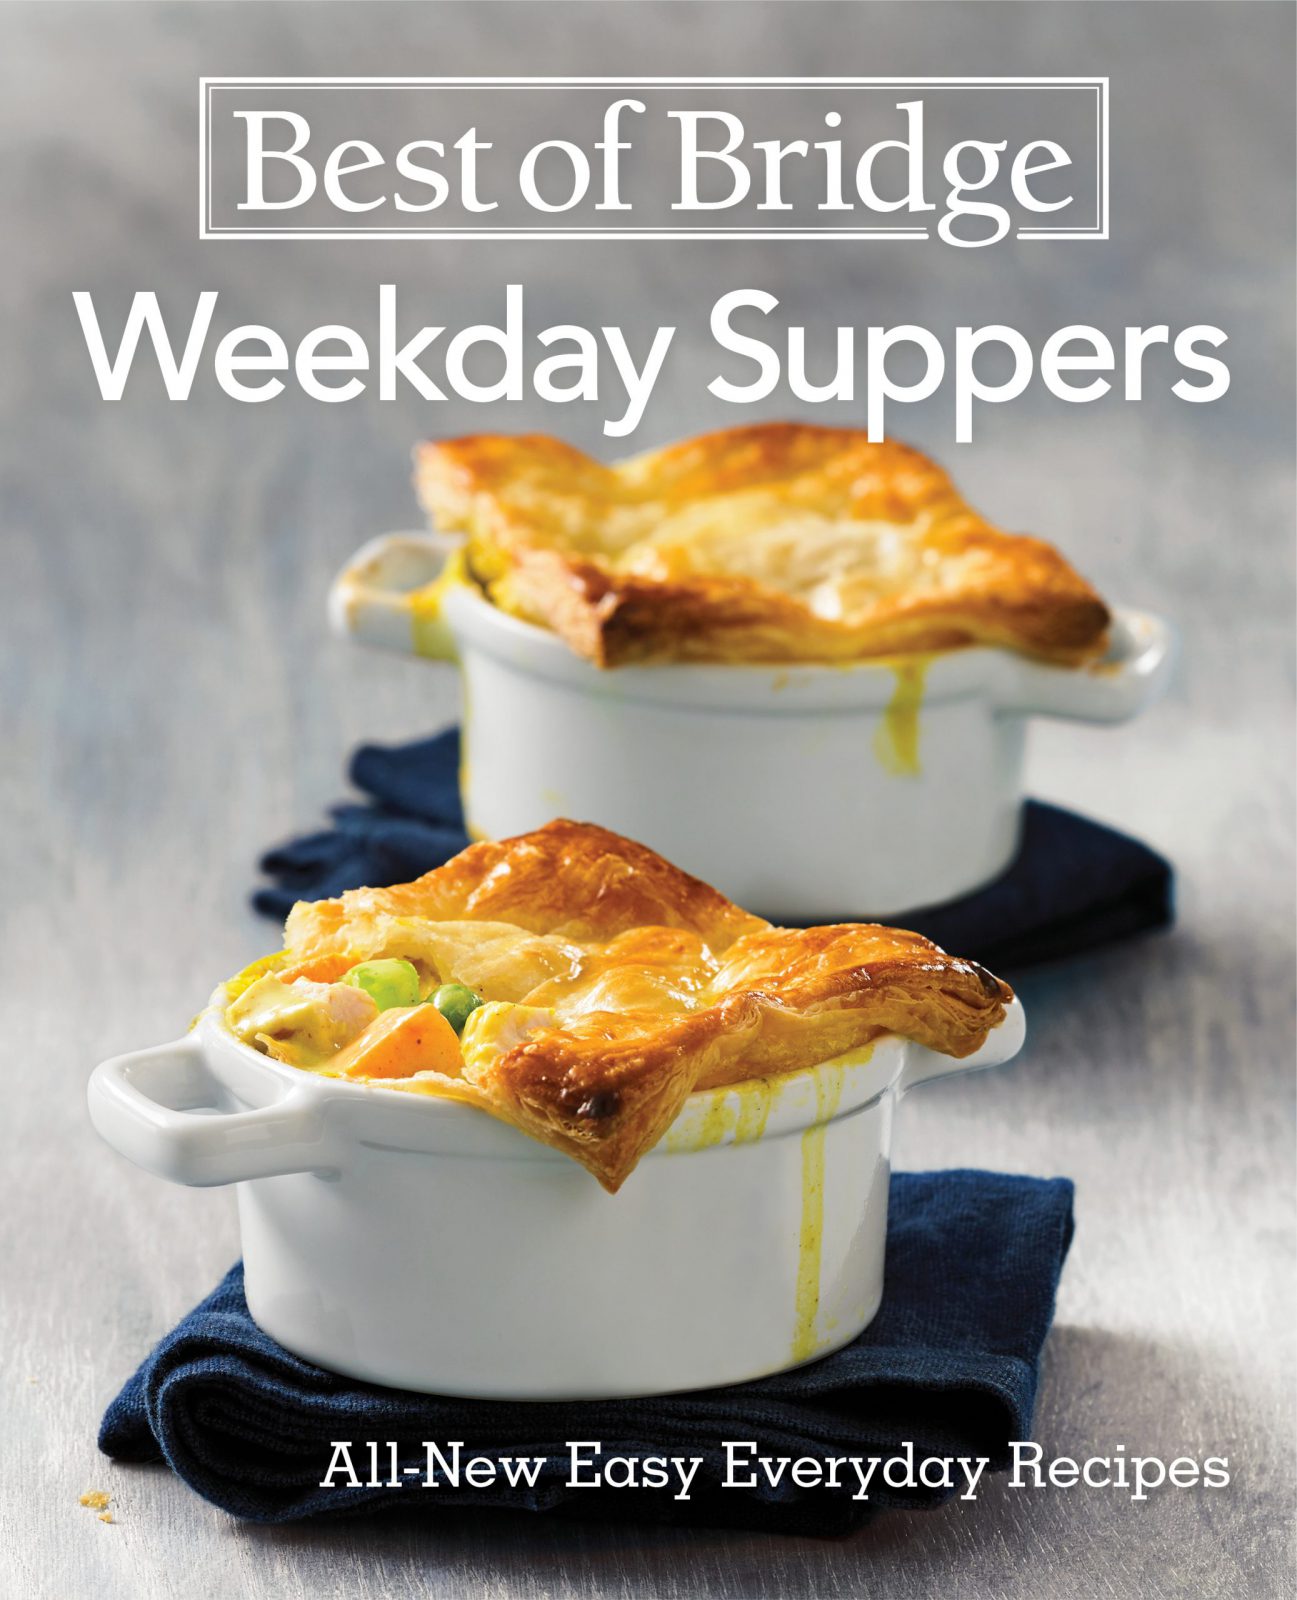 Best of Bridge Weekday Suppers